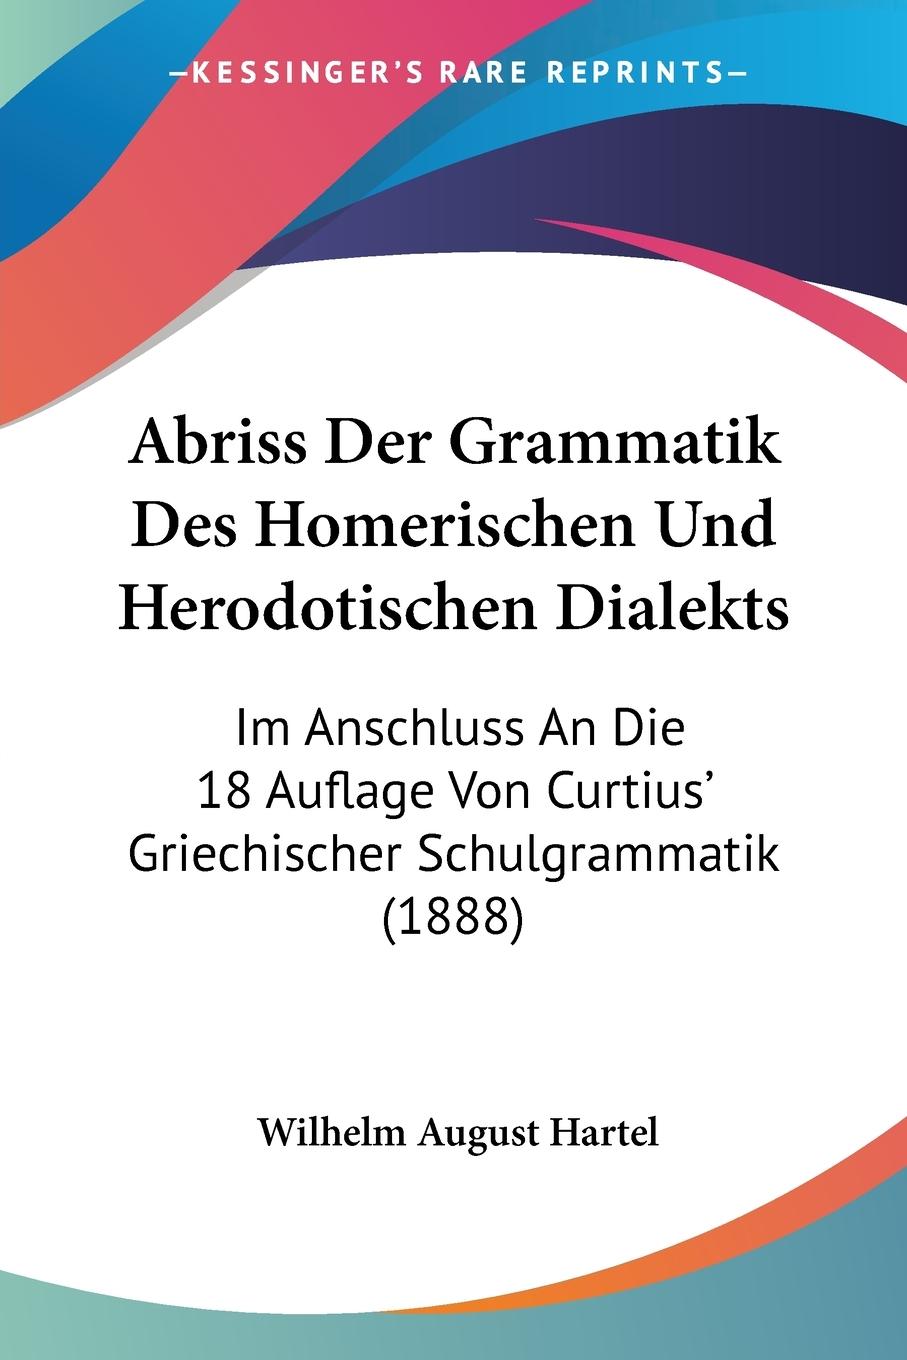 Abriss Der Grammatik Des Homerischen Und Herodotischen Dialekts